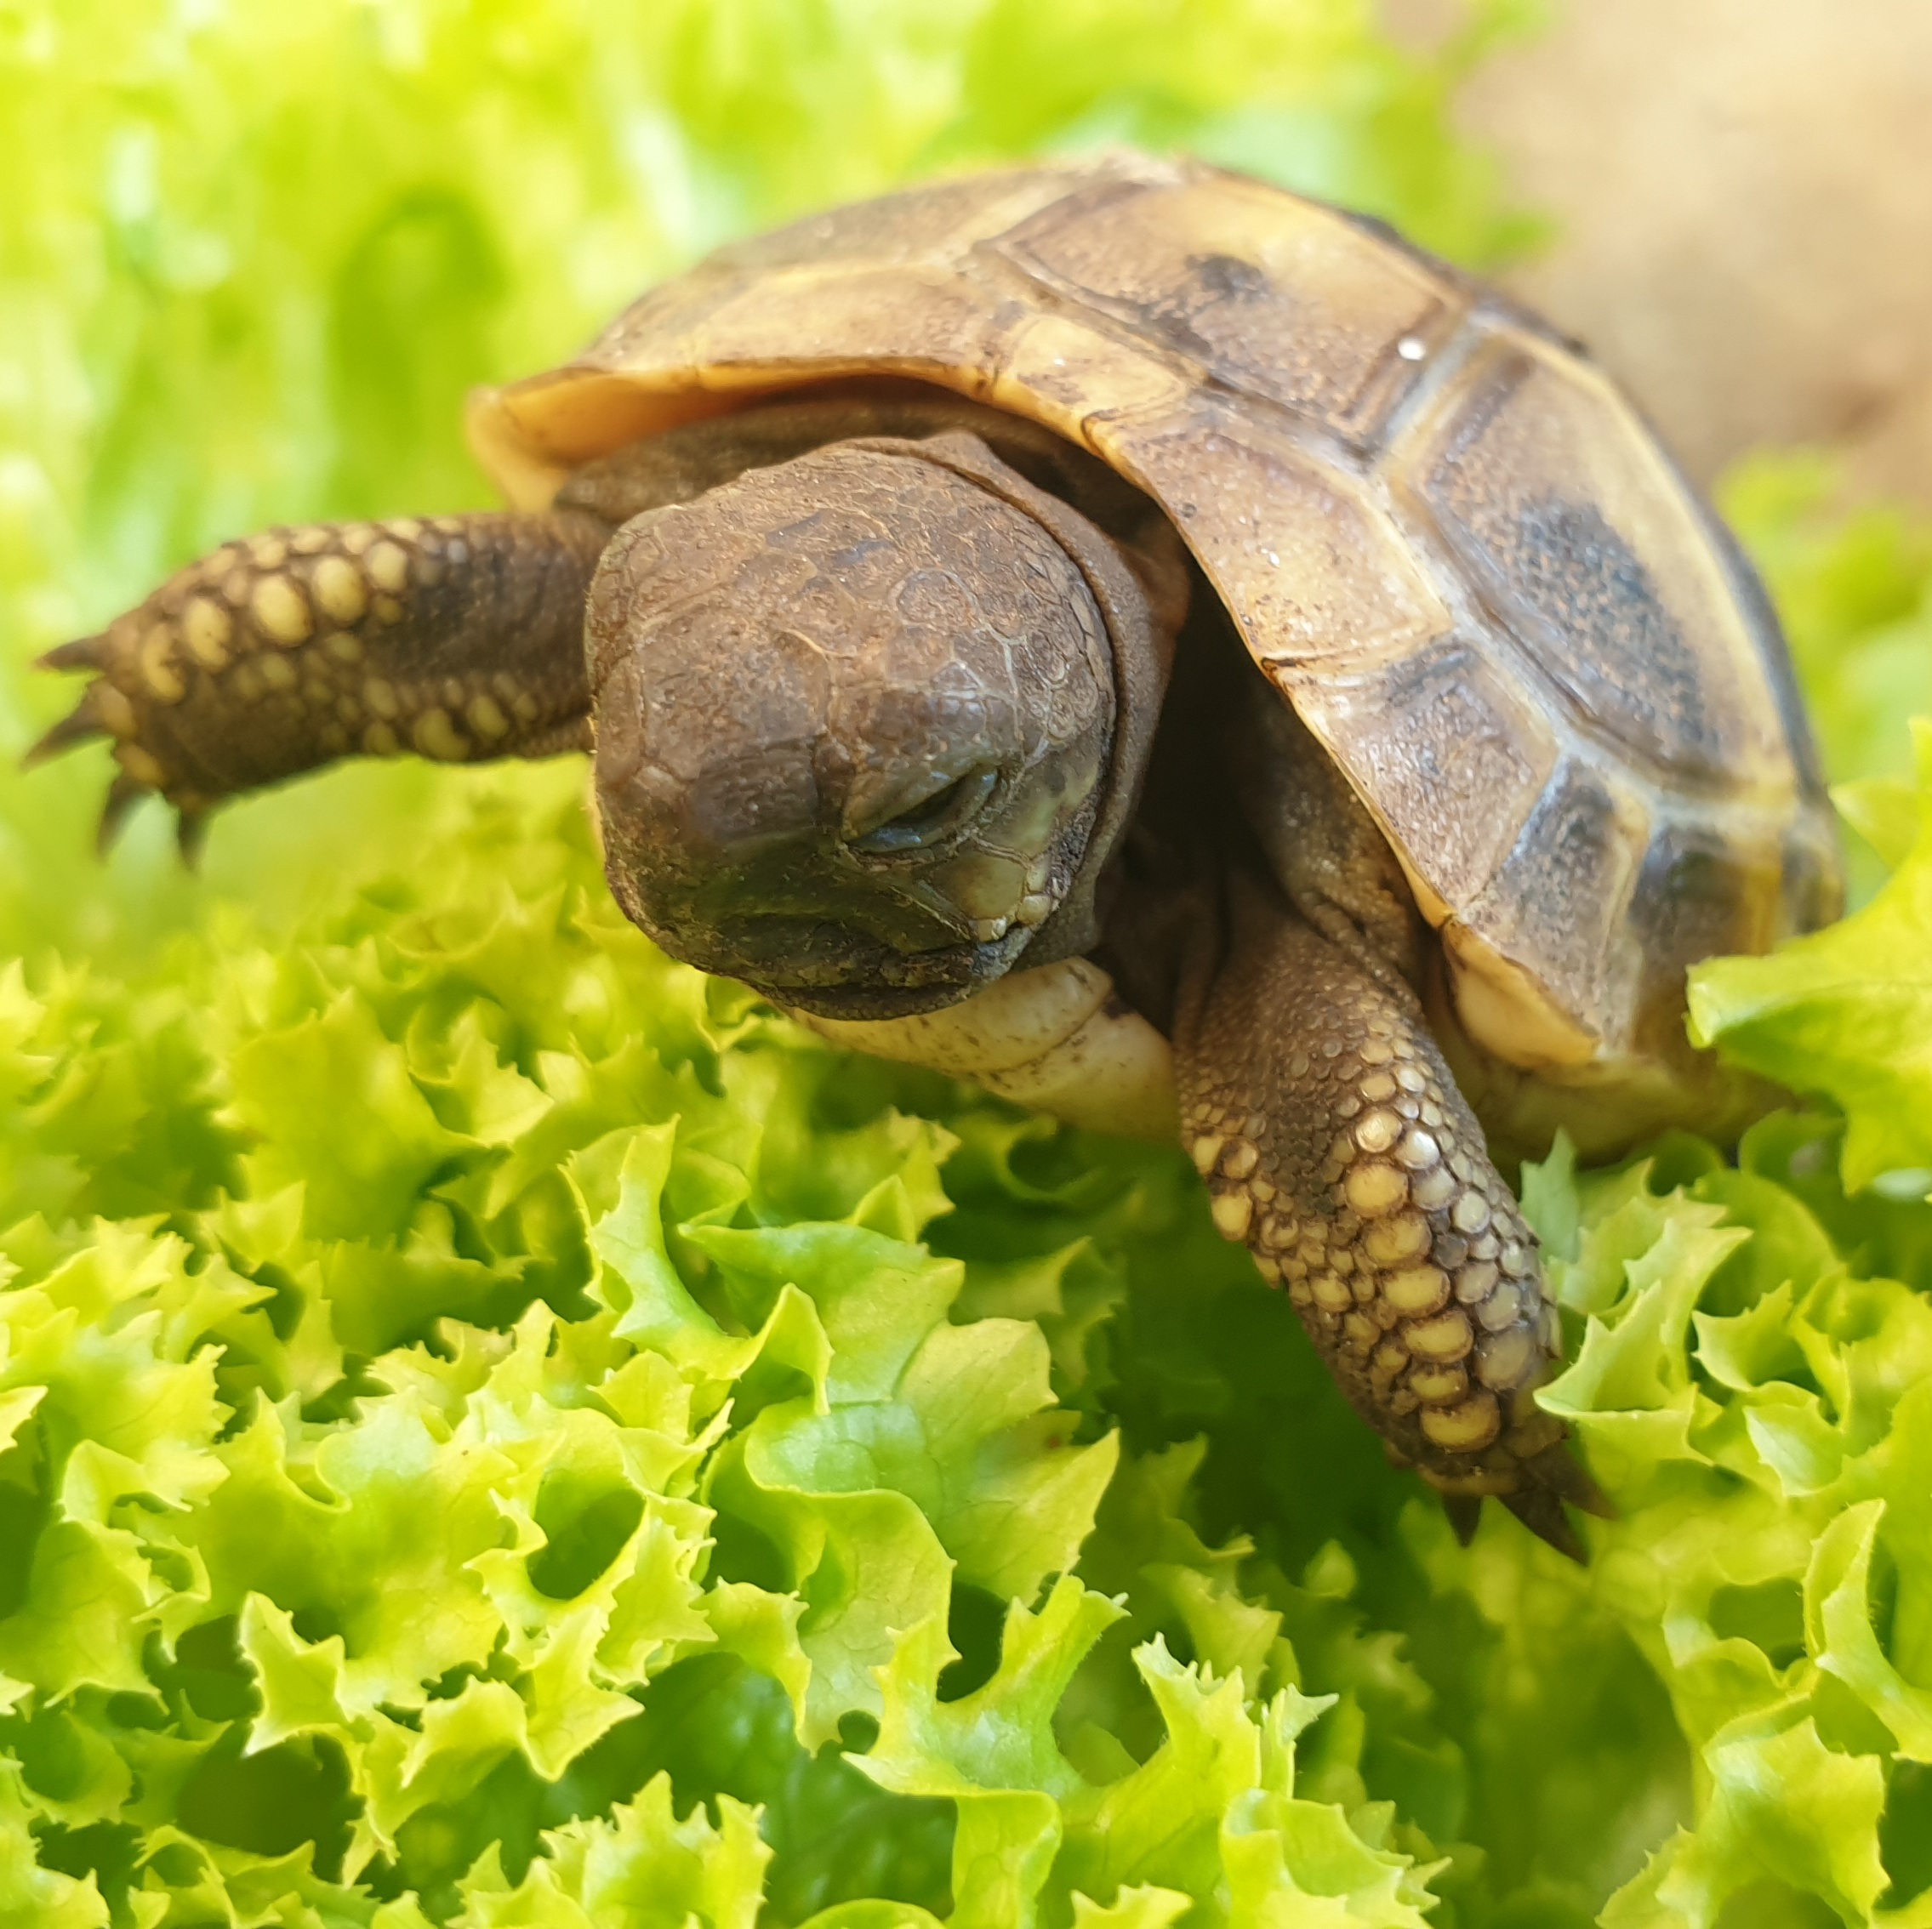 Leonardo erklimmt den Salat (griech. Landschildkröte, 6 Monate)